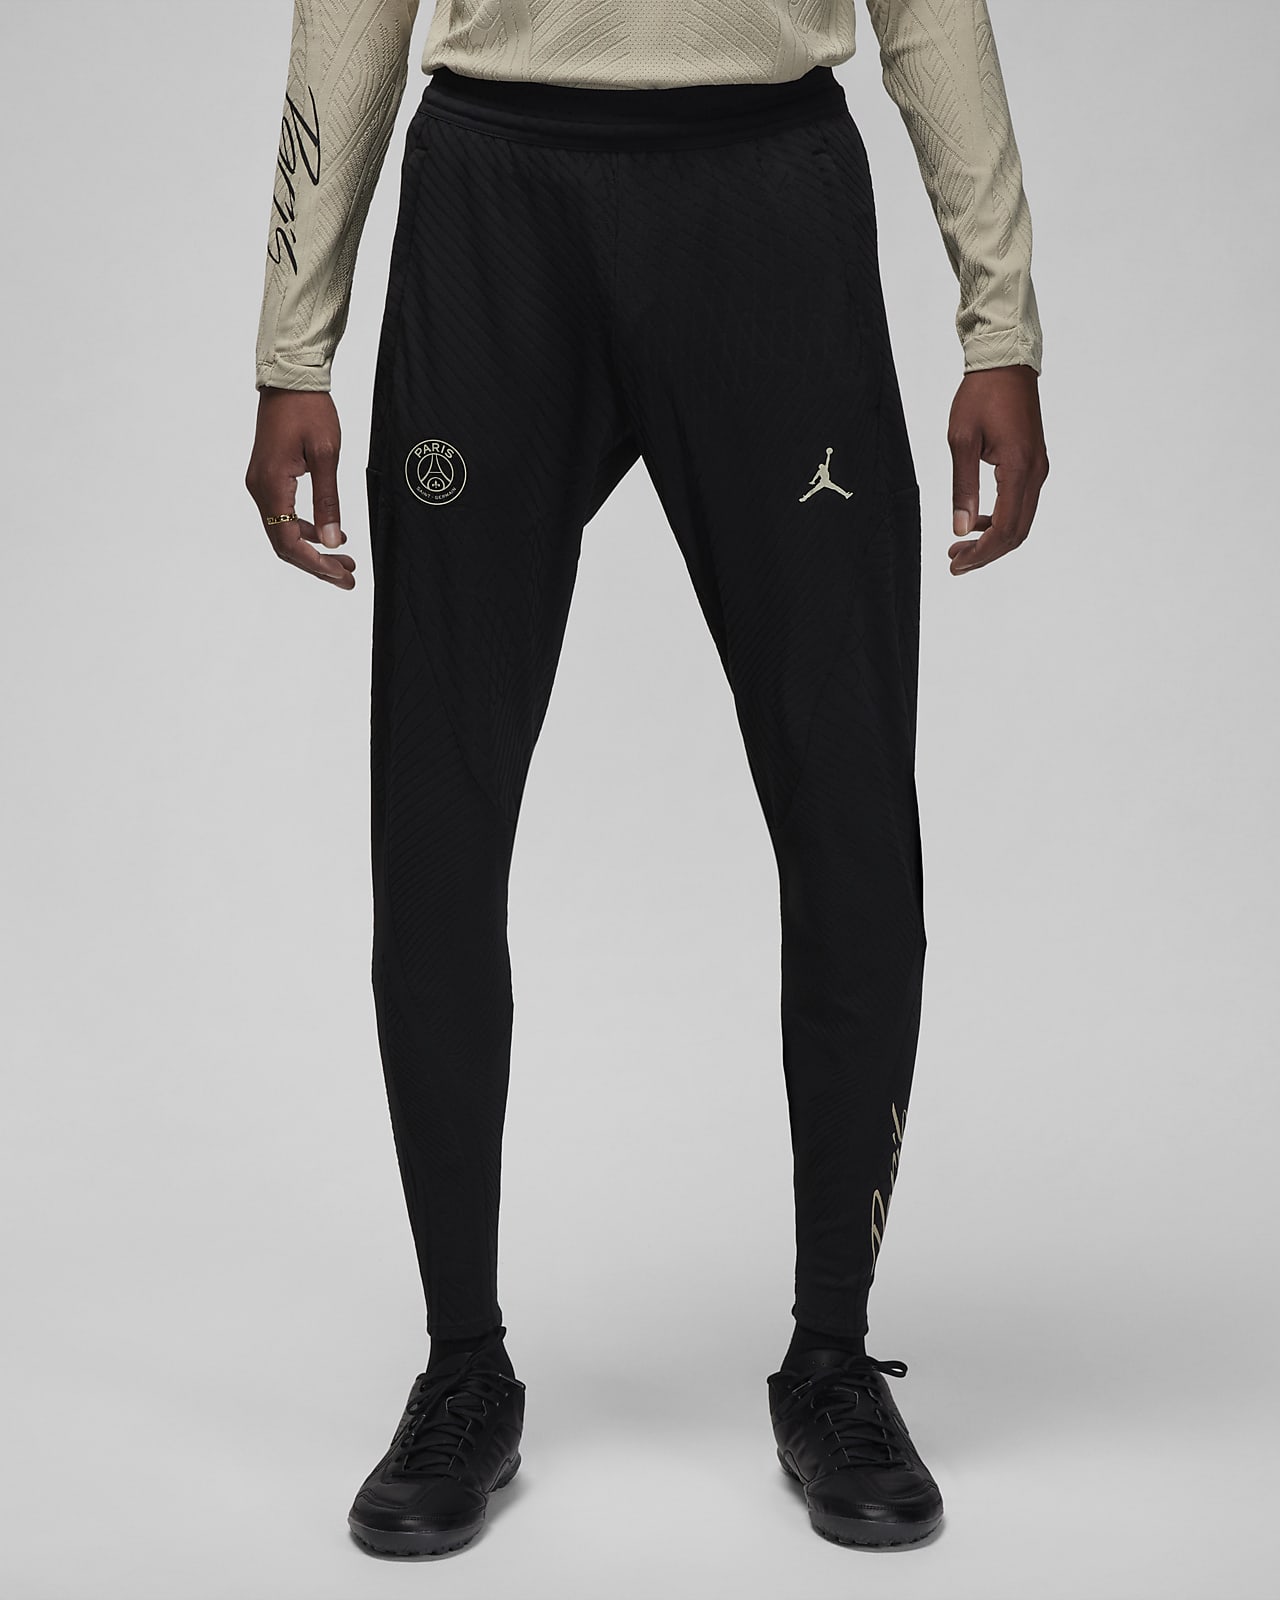 Ανδρικό ποδοσφαιρικό παντελόνι Jordan Dri-FIT ADV εναλλακτικής εμφάνισης Παρί Σεν Ζερμέν Strike Elite